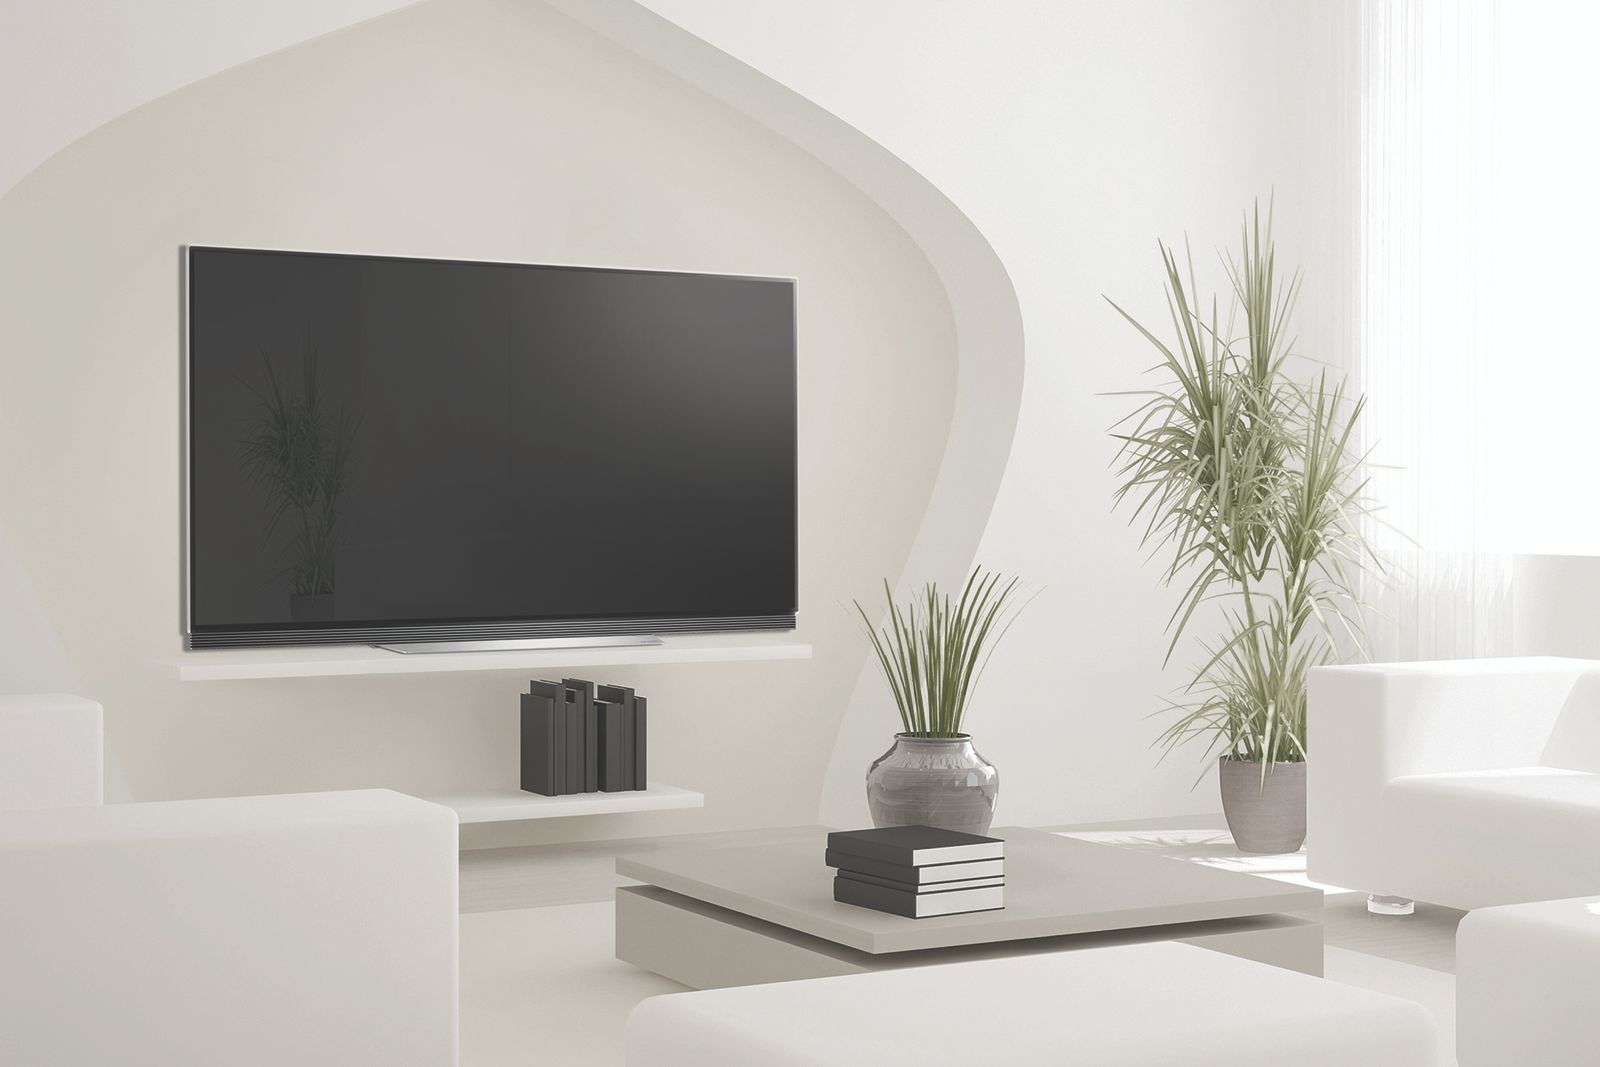 LG E7 4K OLED TV image 1